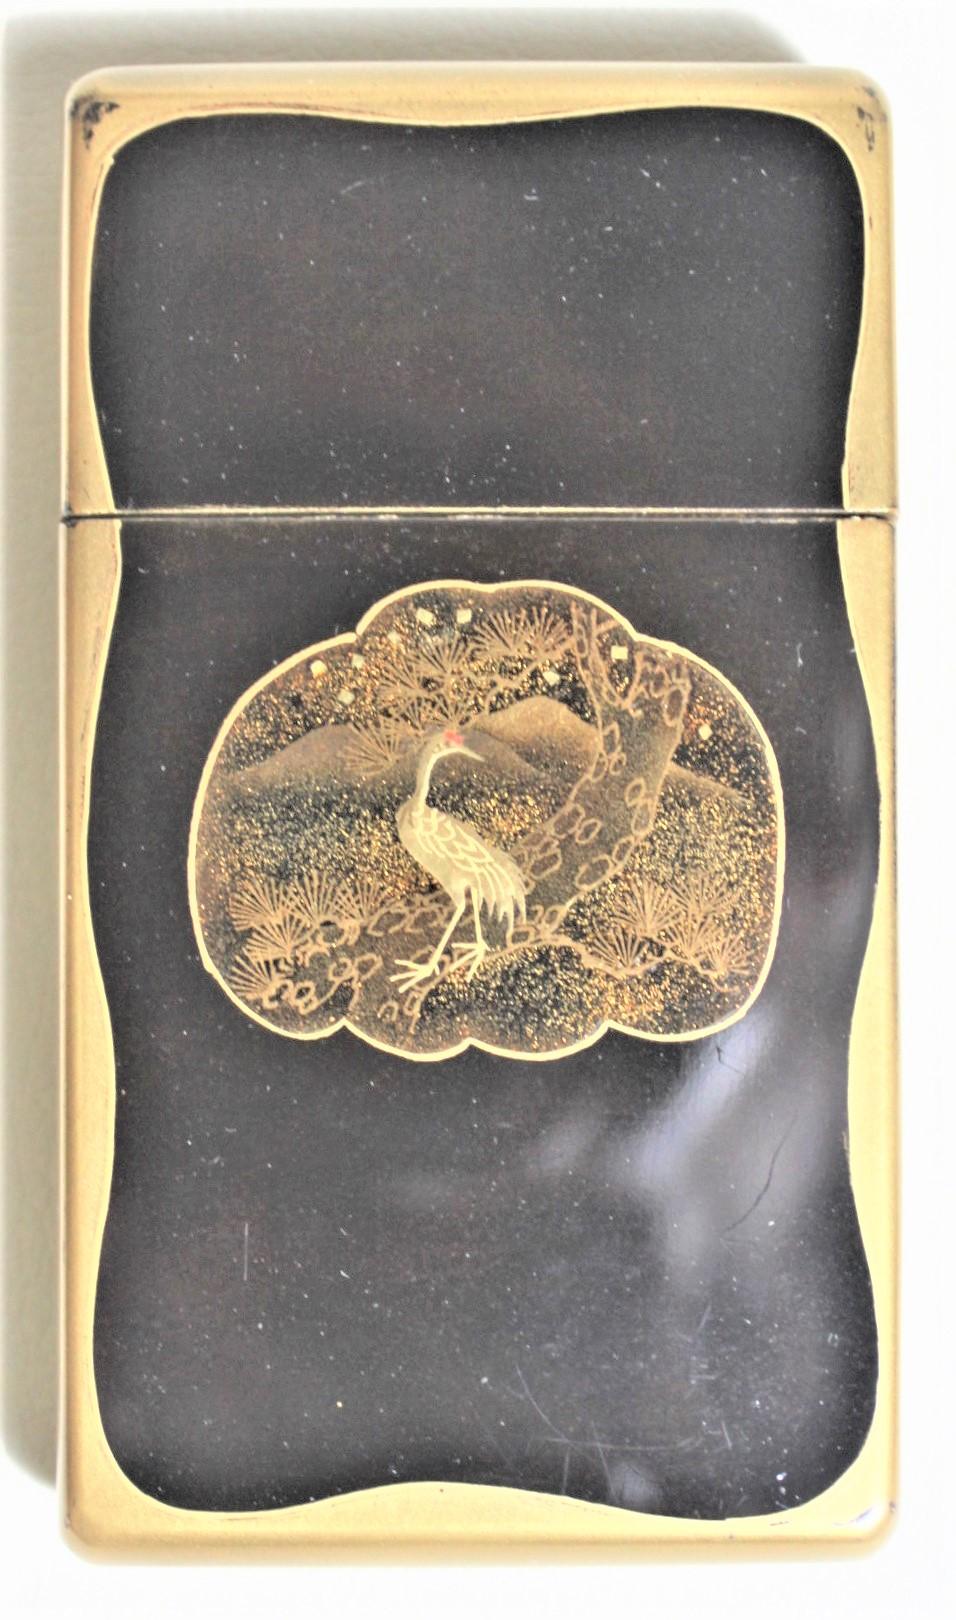 Diese antike Kartenschachtel ist weder signiert noch mit Initialen versehen, so dass der genaue Künstler nicht bekannt ist. Es wird jedoch angenommen, dass sie um 1900 in Japan im Meiji-Stil hergestellt wurde. Dieses Kästchen besteht aus schwarz